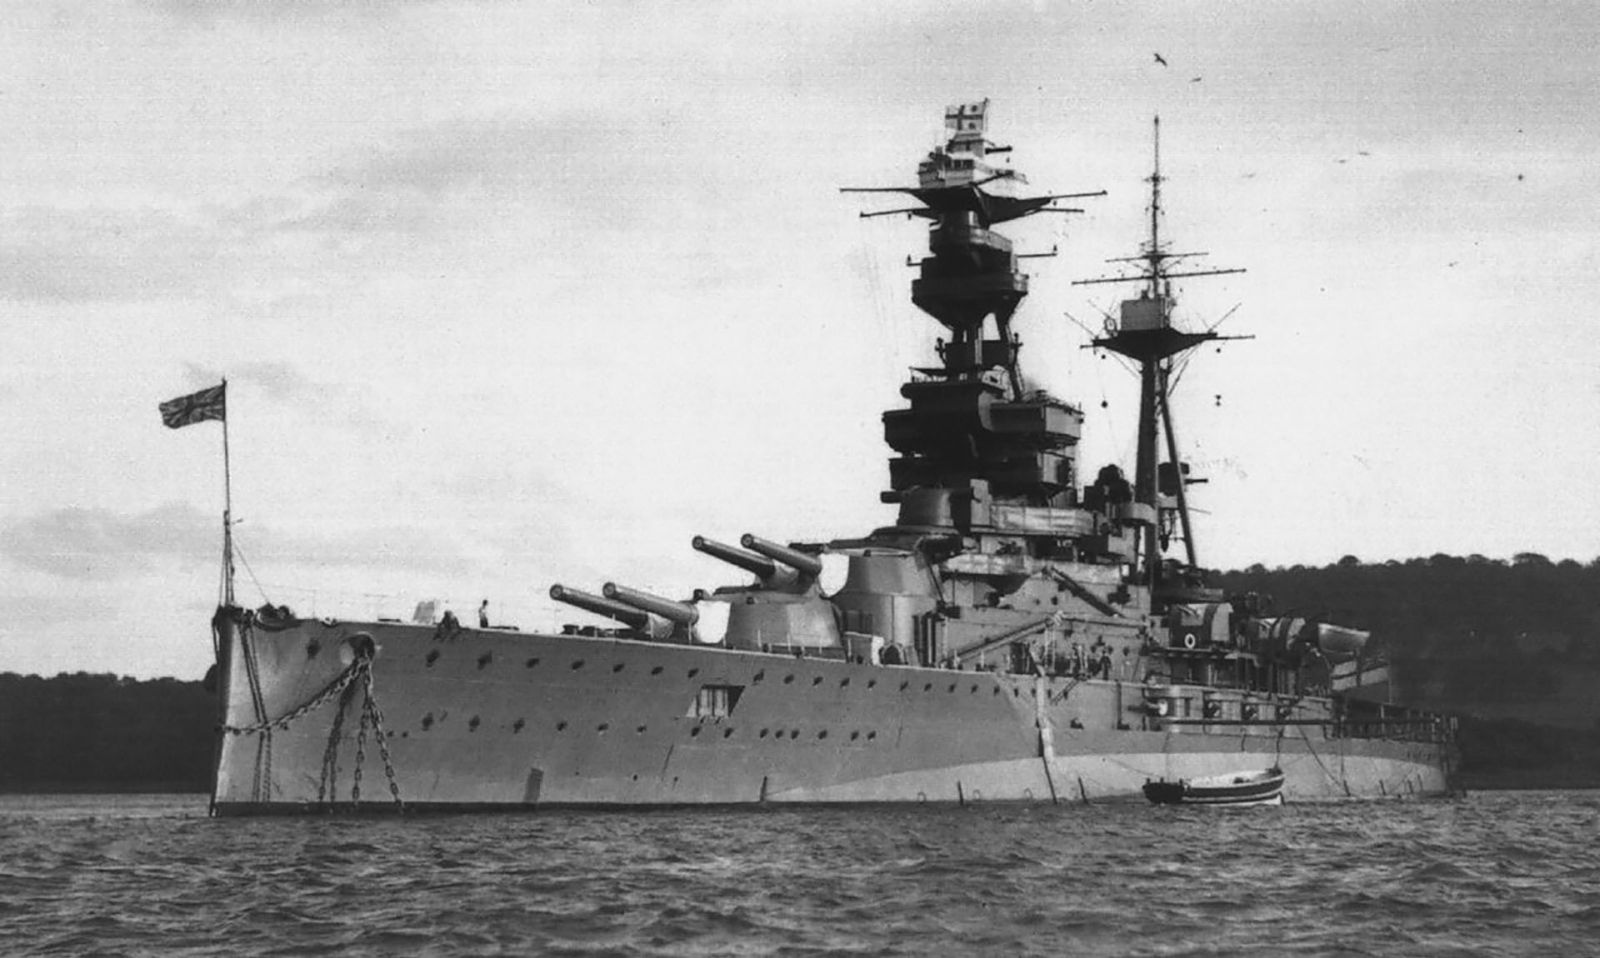 HMS Royal Oak, the Revenge-class battleships in 30'